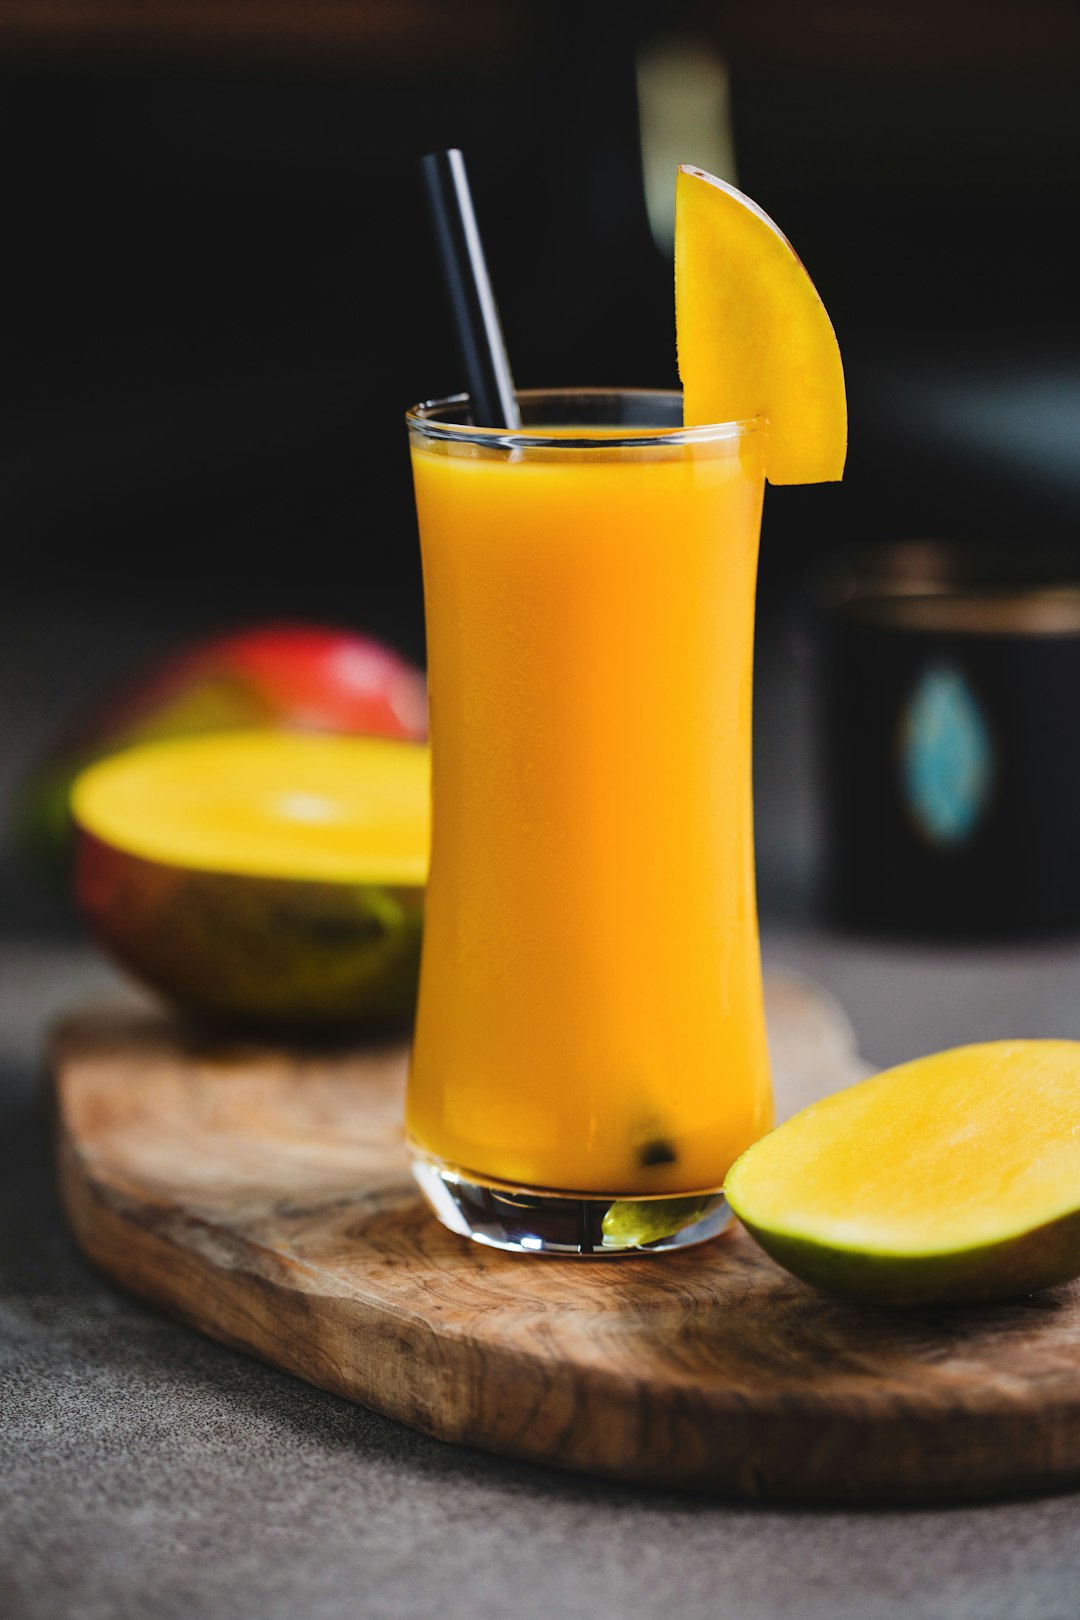 Make Mango Juice From Palu City